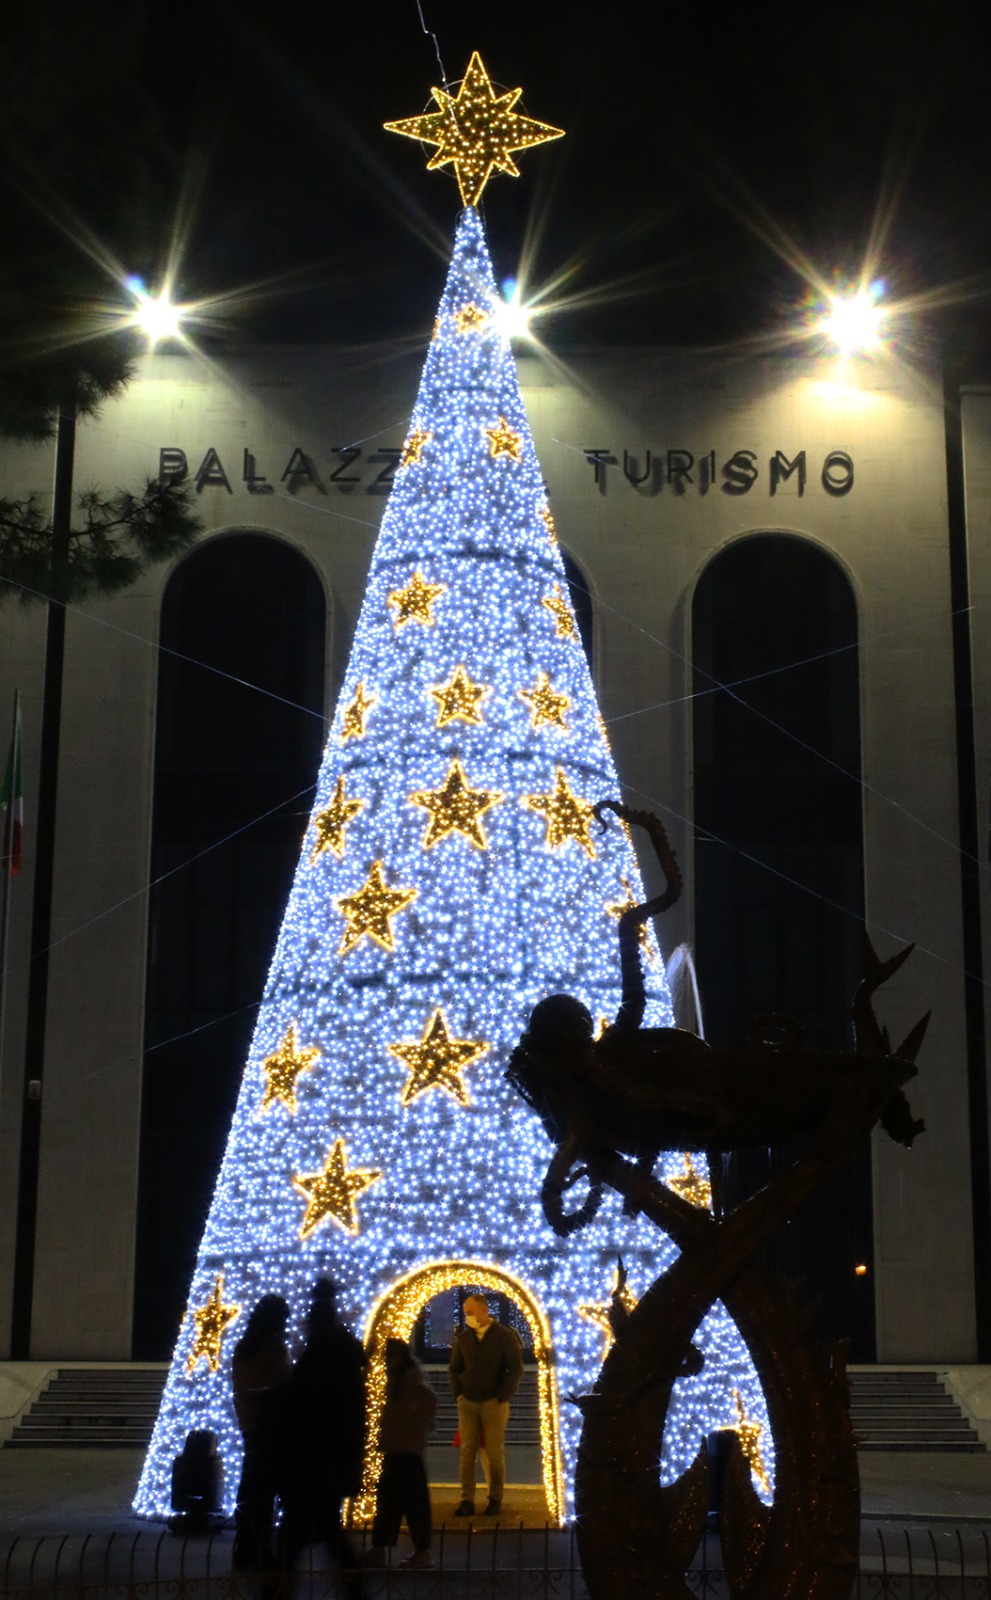 L'albero di Natale 2020 di Palazzo del Turismo 